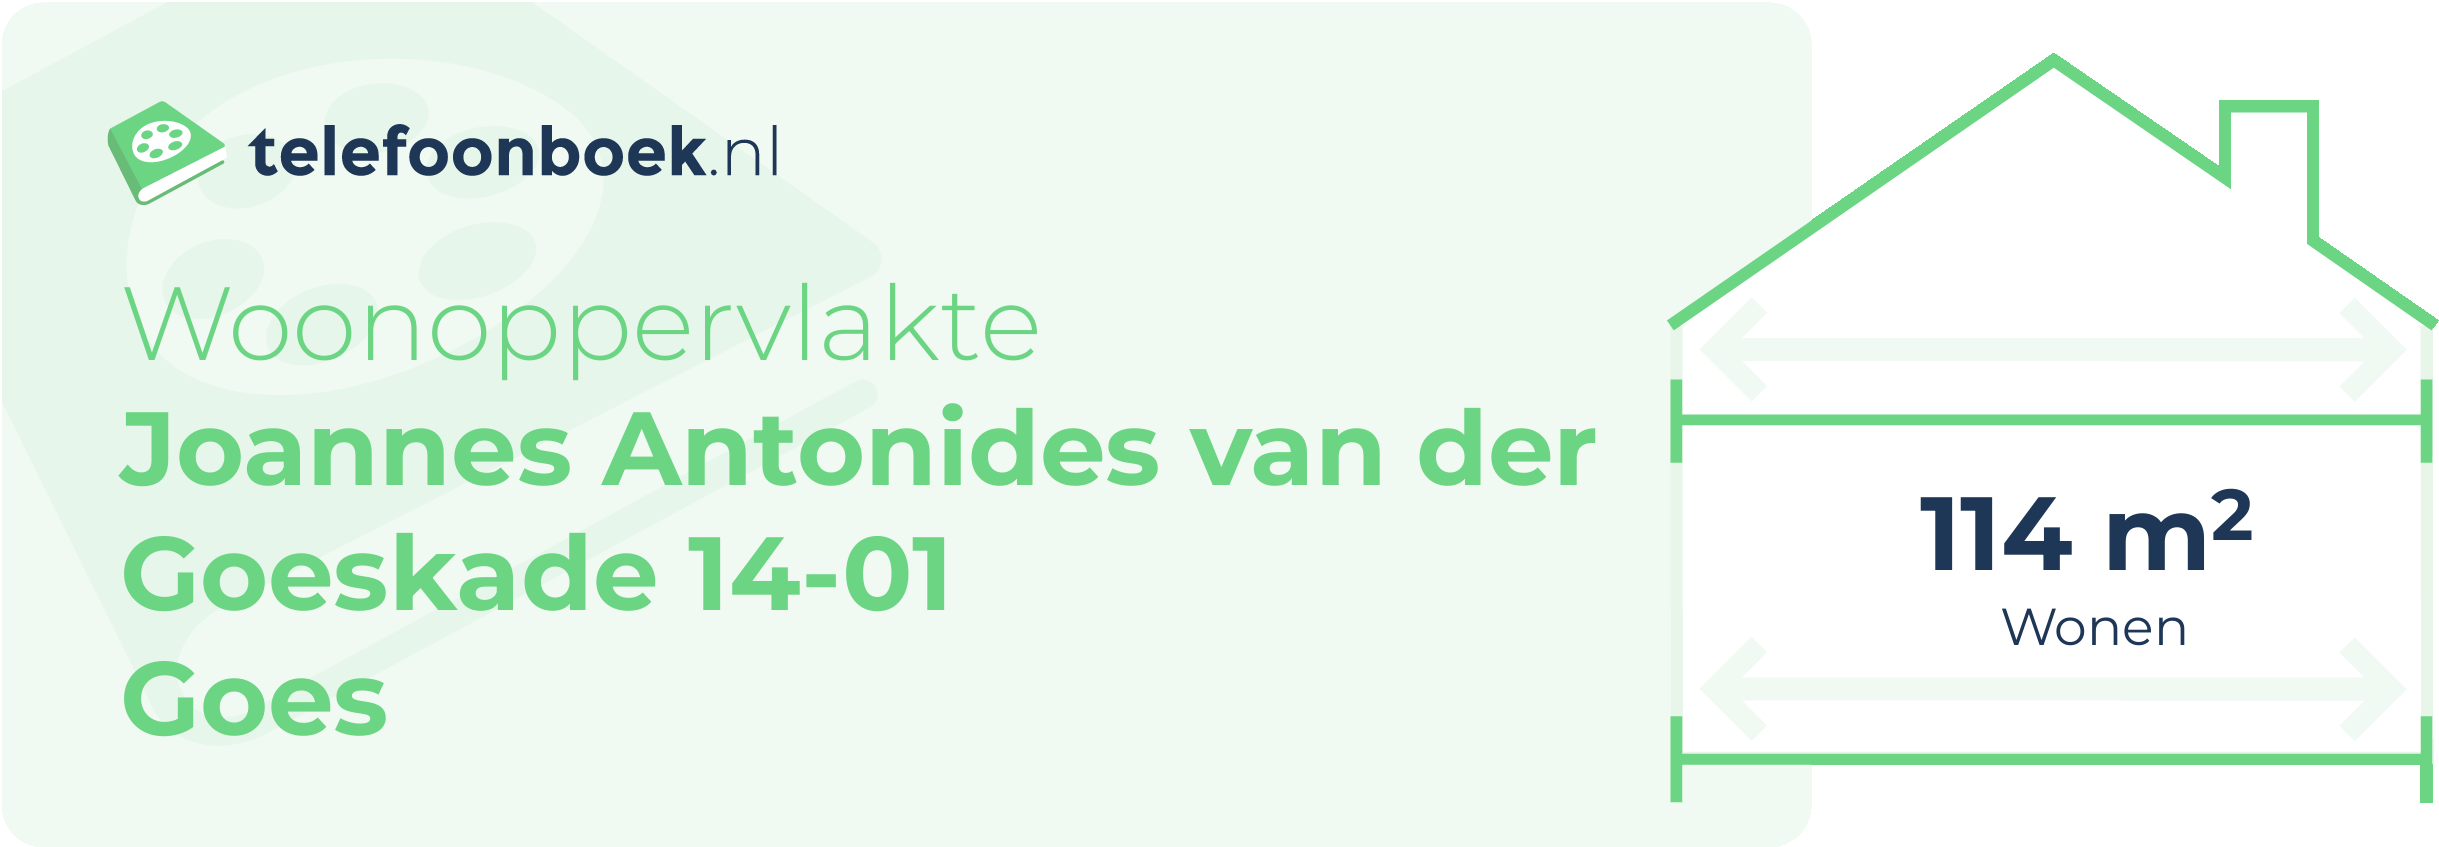 Woonoppervlakte Joannes Antonides Van Der Goeskade 14-01 Goes